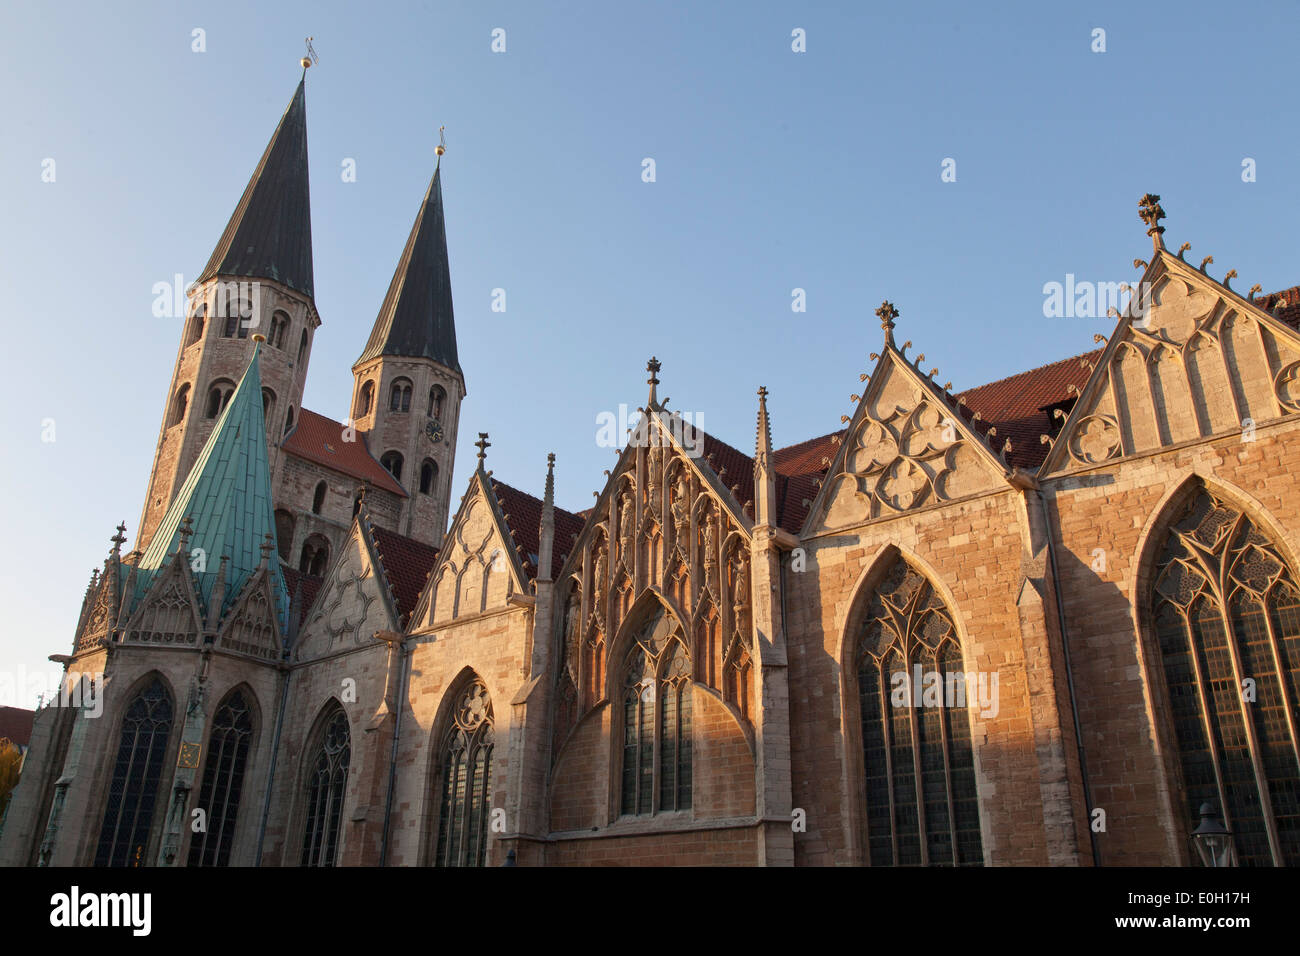 Église Saint Martini avec toit en cuivre, église médiévale, Brunswick, Basse-Saxe, Allemagne Banque D'Images